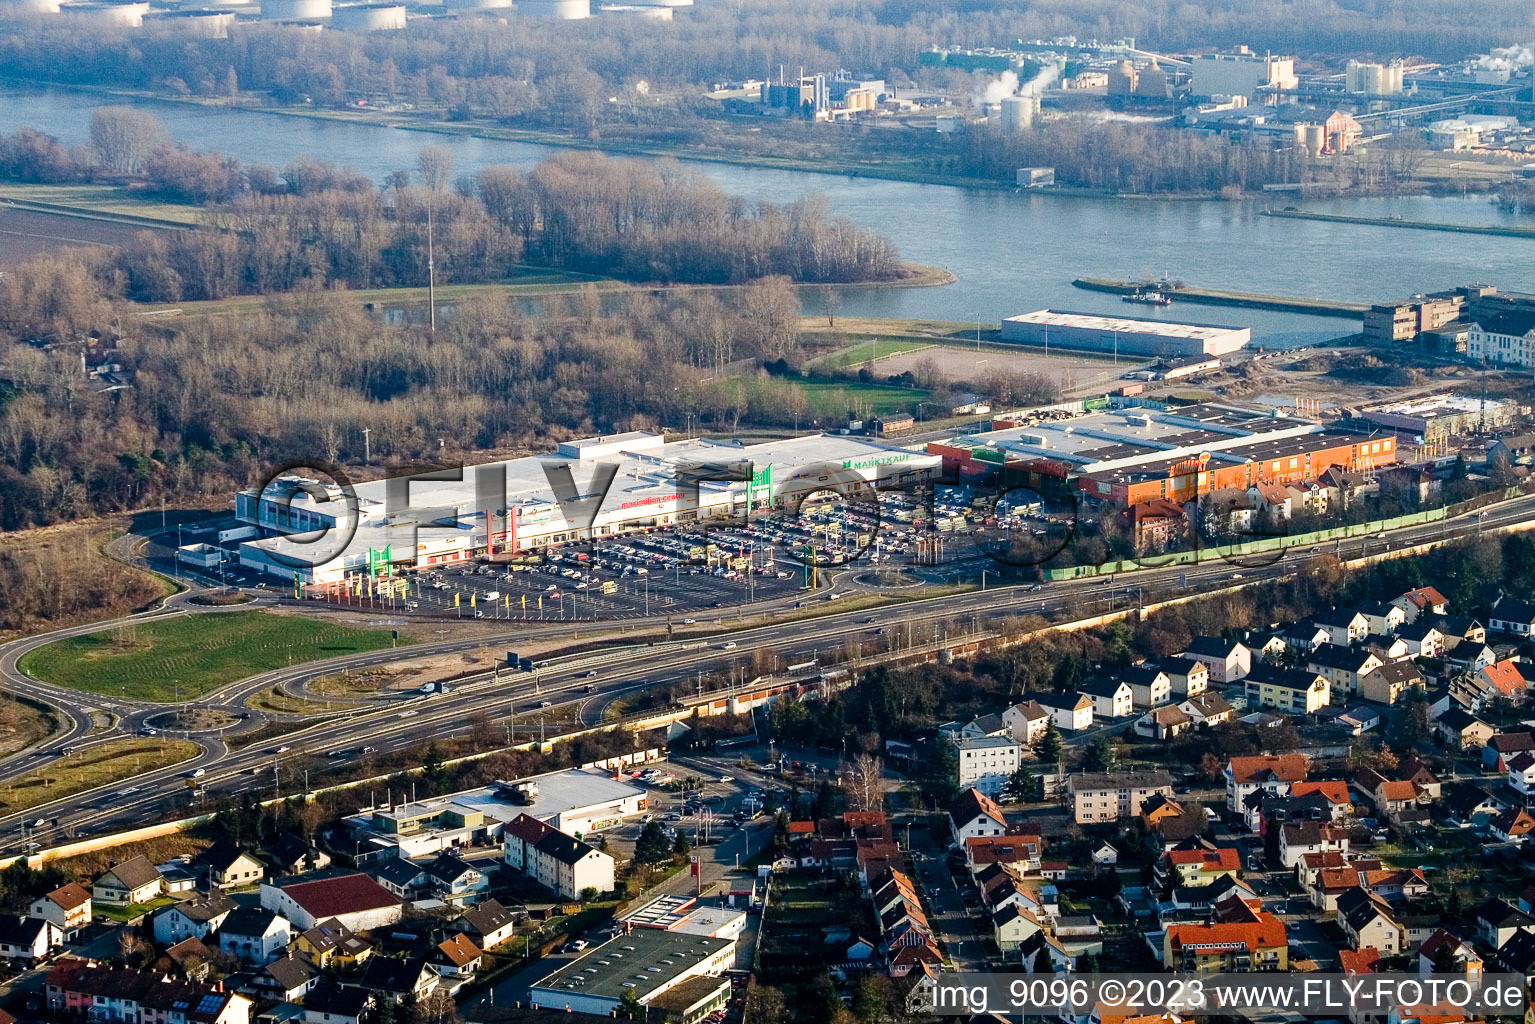 Photographie aérienne de Centre Maximilien à le quartier Maximiliansau in Wörth am Rhein dans le département Rhénanie-Palatinat, Allemagne